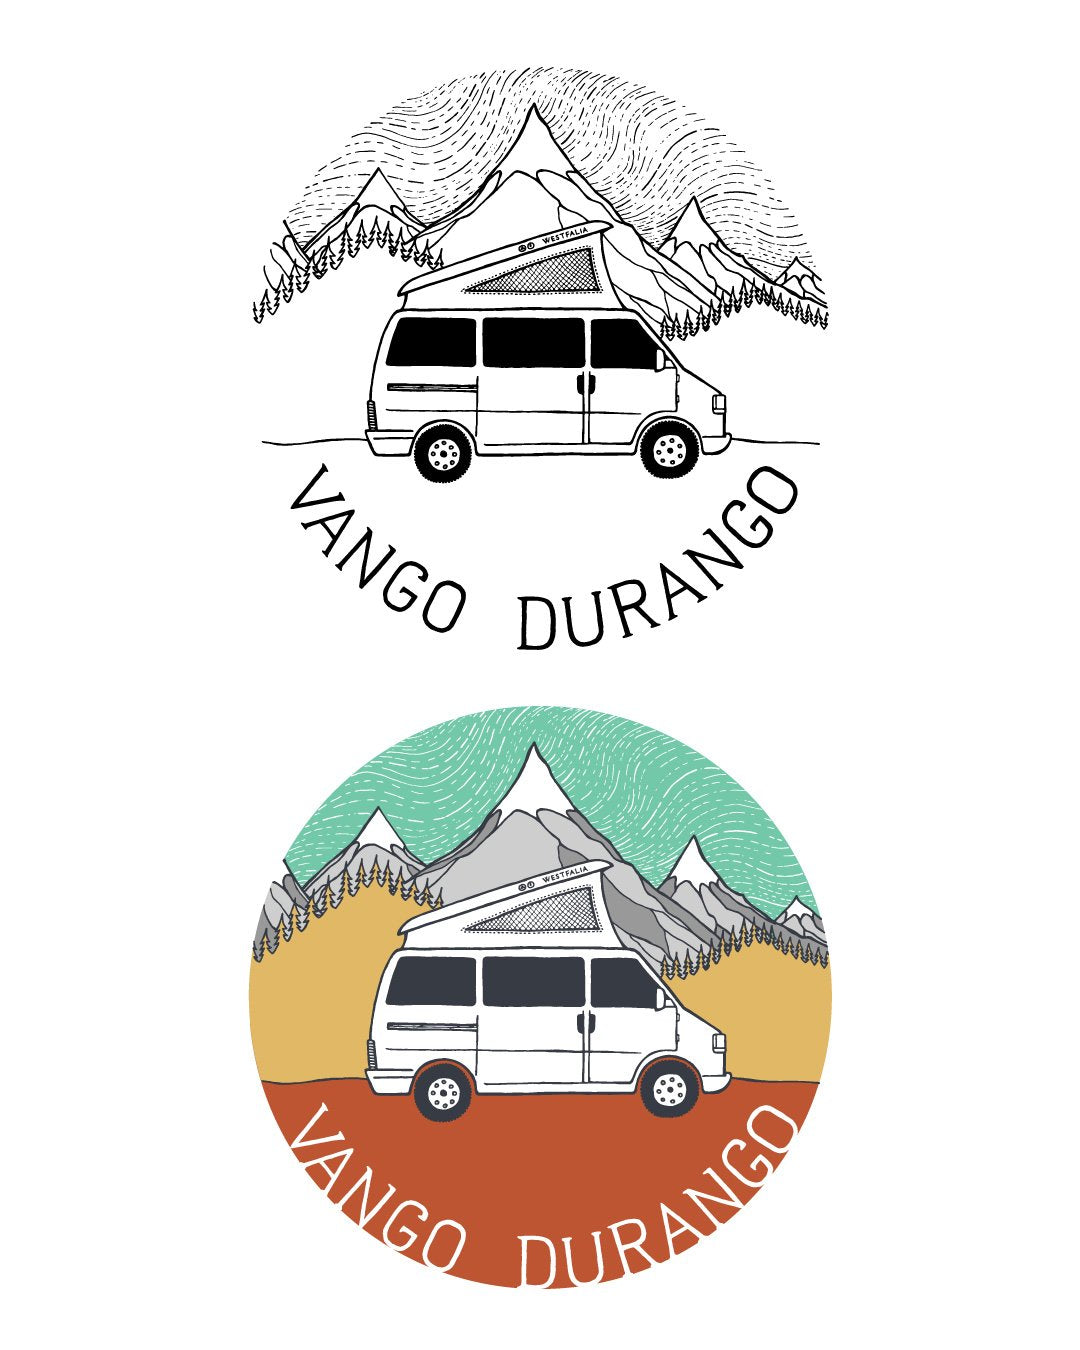 Vango Durango